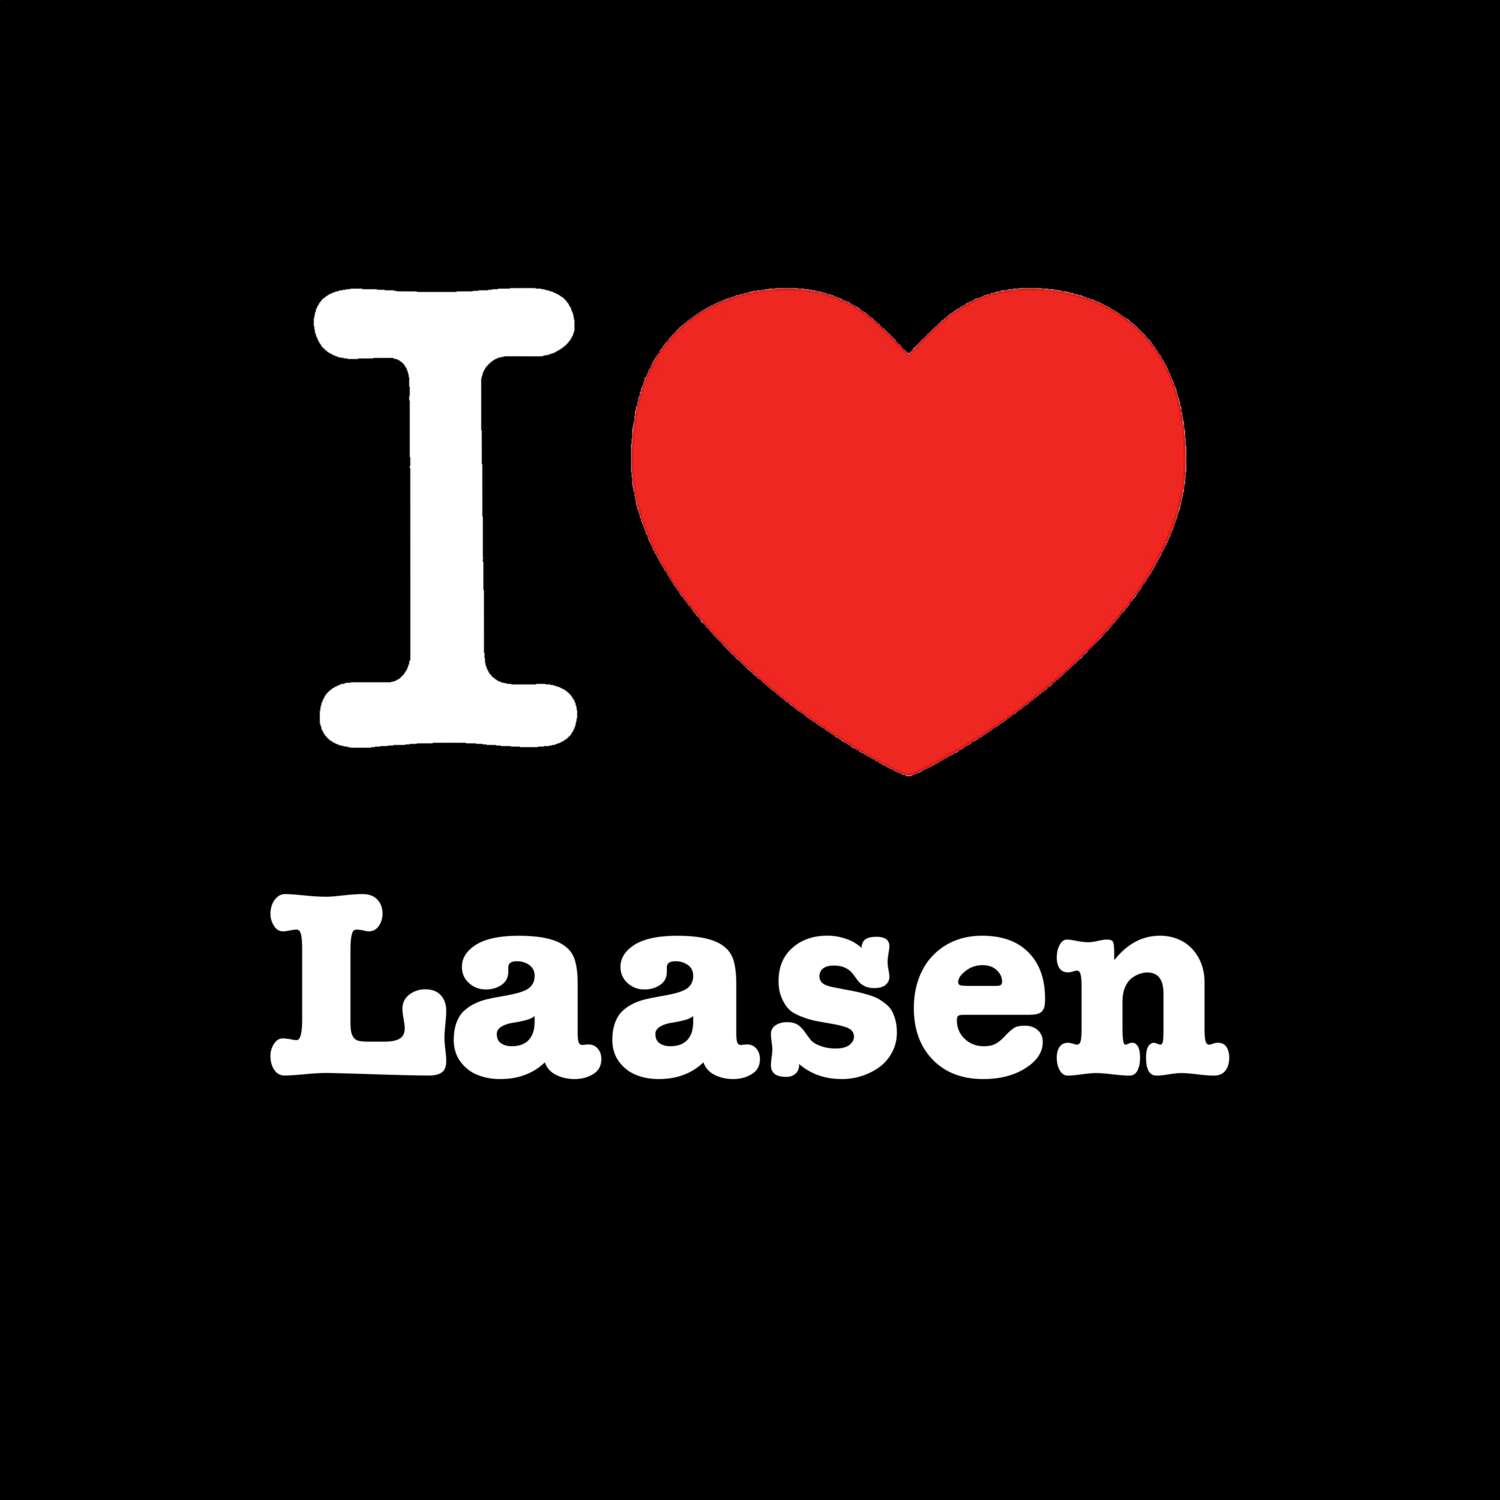 Laasen T-Shirt »I love«